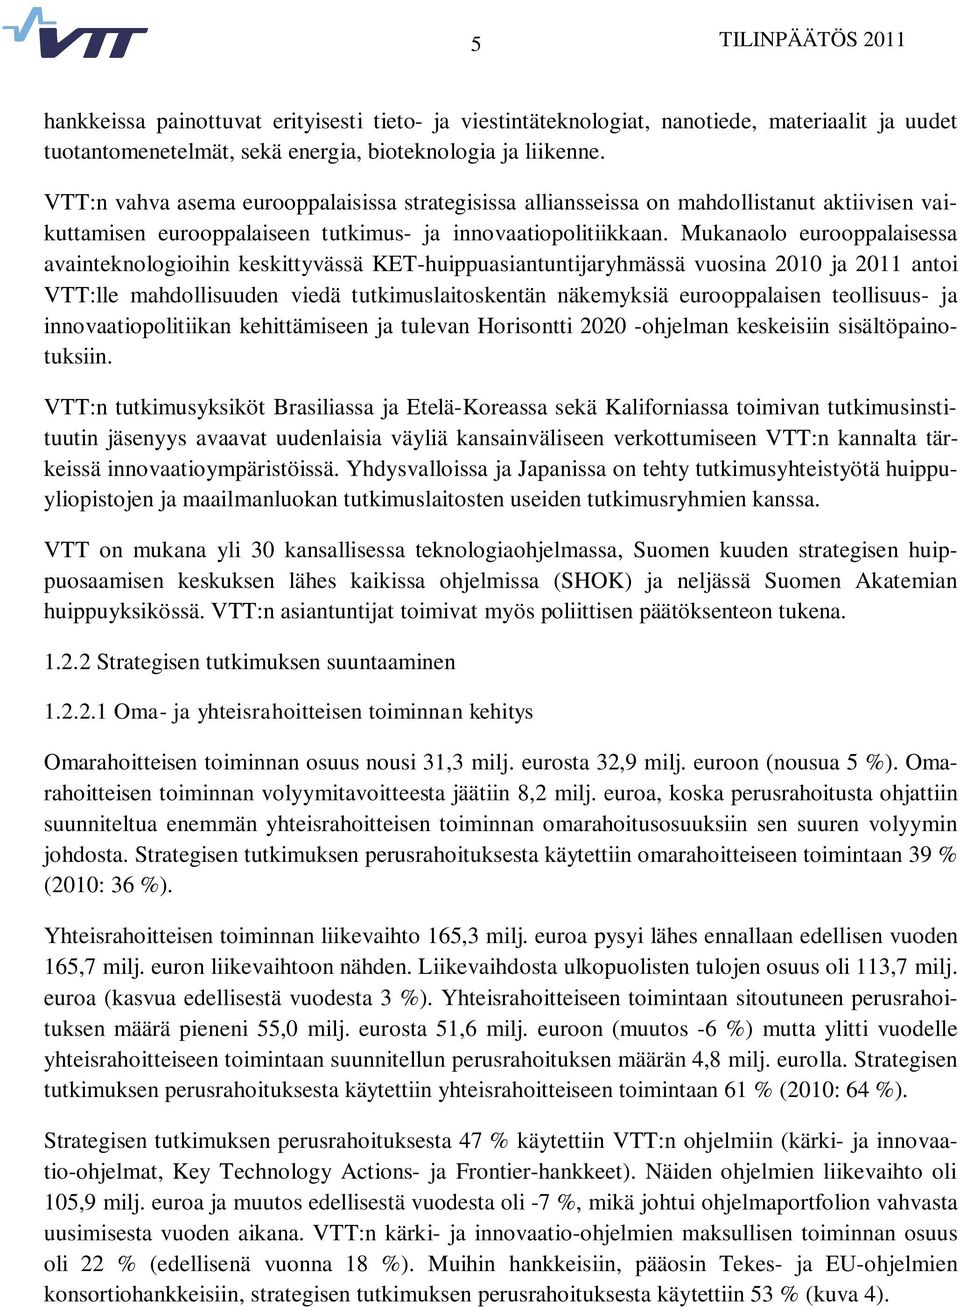 Mukanaolo eurooppalaisessa avainteknologioihin keskittyvässä KET-huippuasiantuntijaryhmässä vuosina 2010 ja 2011 antoi VTT:lle mahdollisuuden viedä tutkimuslaitoskentän näkemyksiä eurooppalaisen